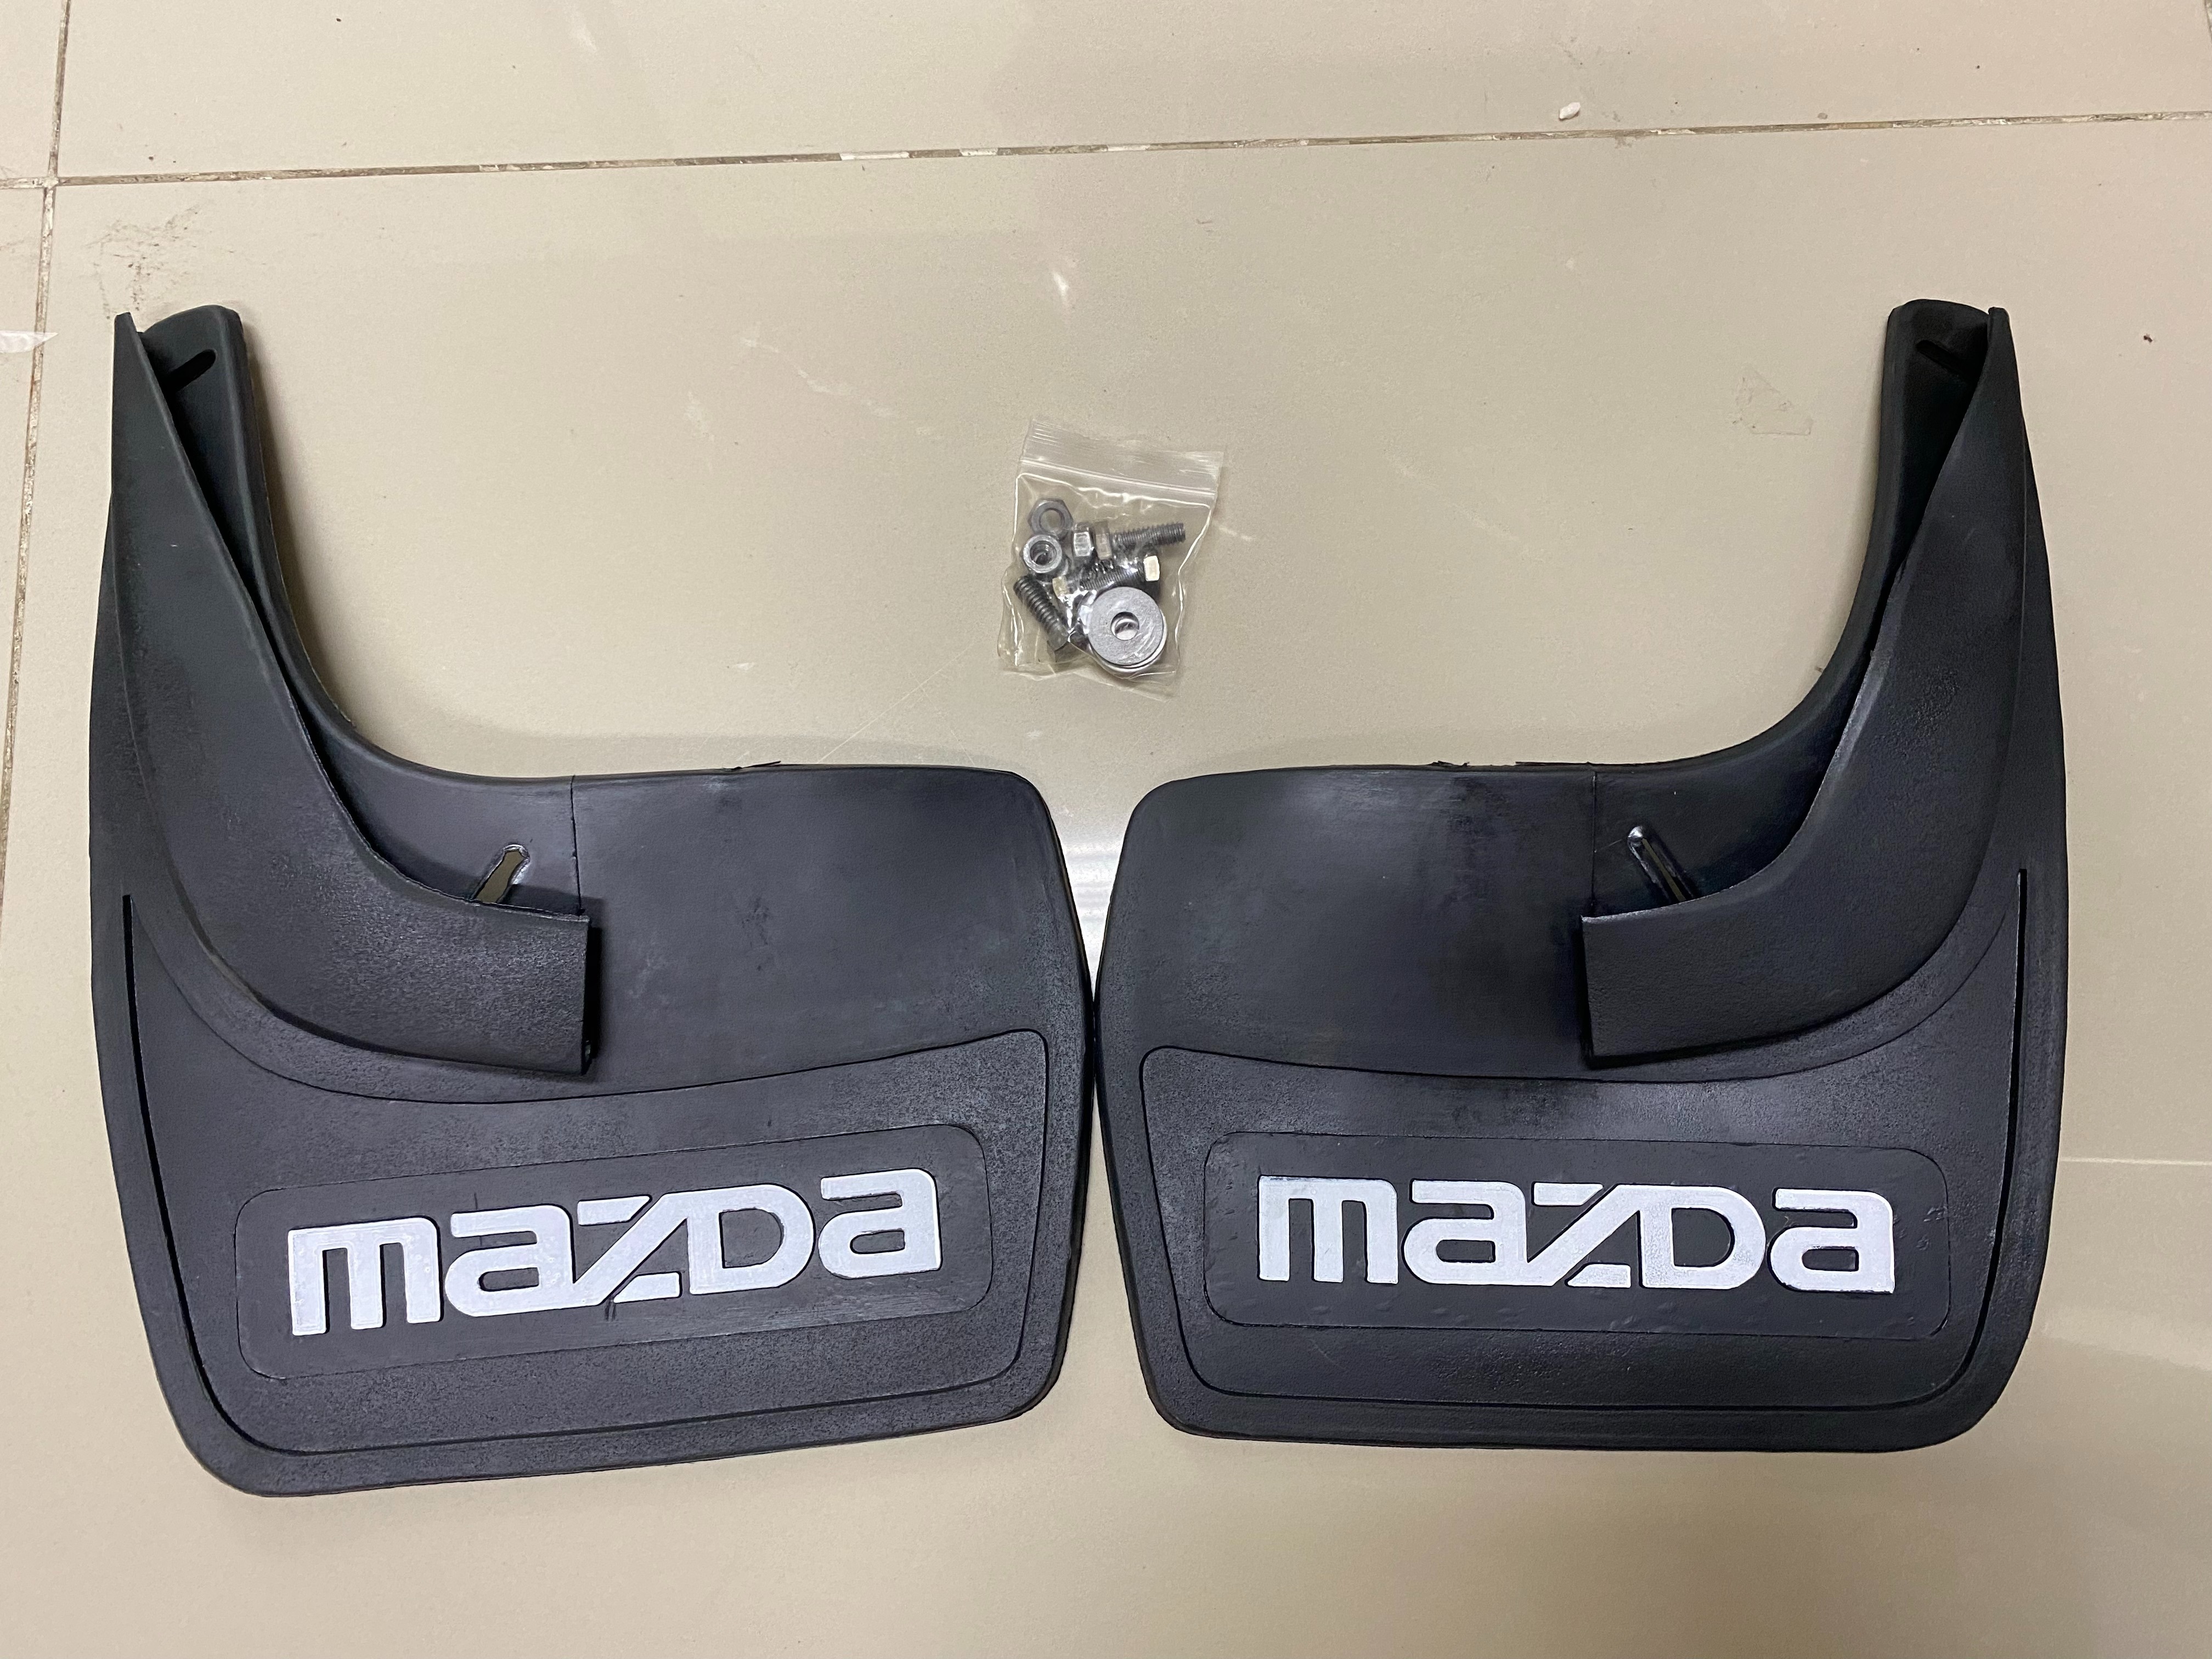 ยางบังโคลน  ยางกันโคลน หน้า+หลัง รถเก๋ง ทั่วไป ยางสีดำ เขียน  MAZDA 4 ชิ้น Univeral Front  Rear Back Mud Guard Rubber มีเก็บเงินปลายทาง